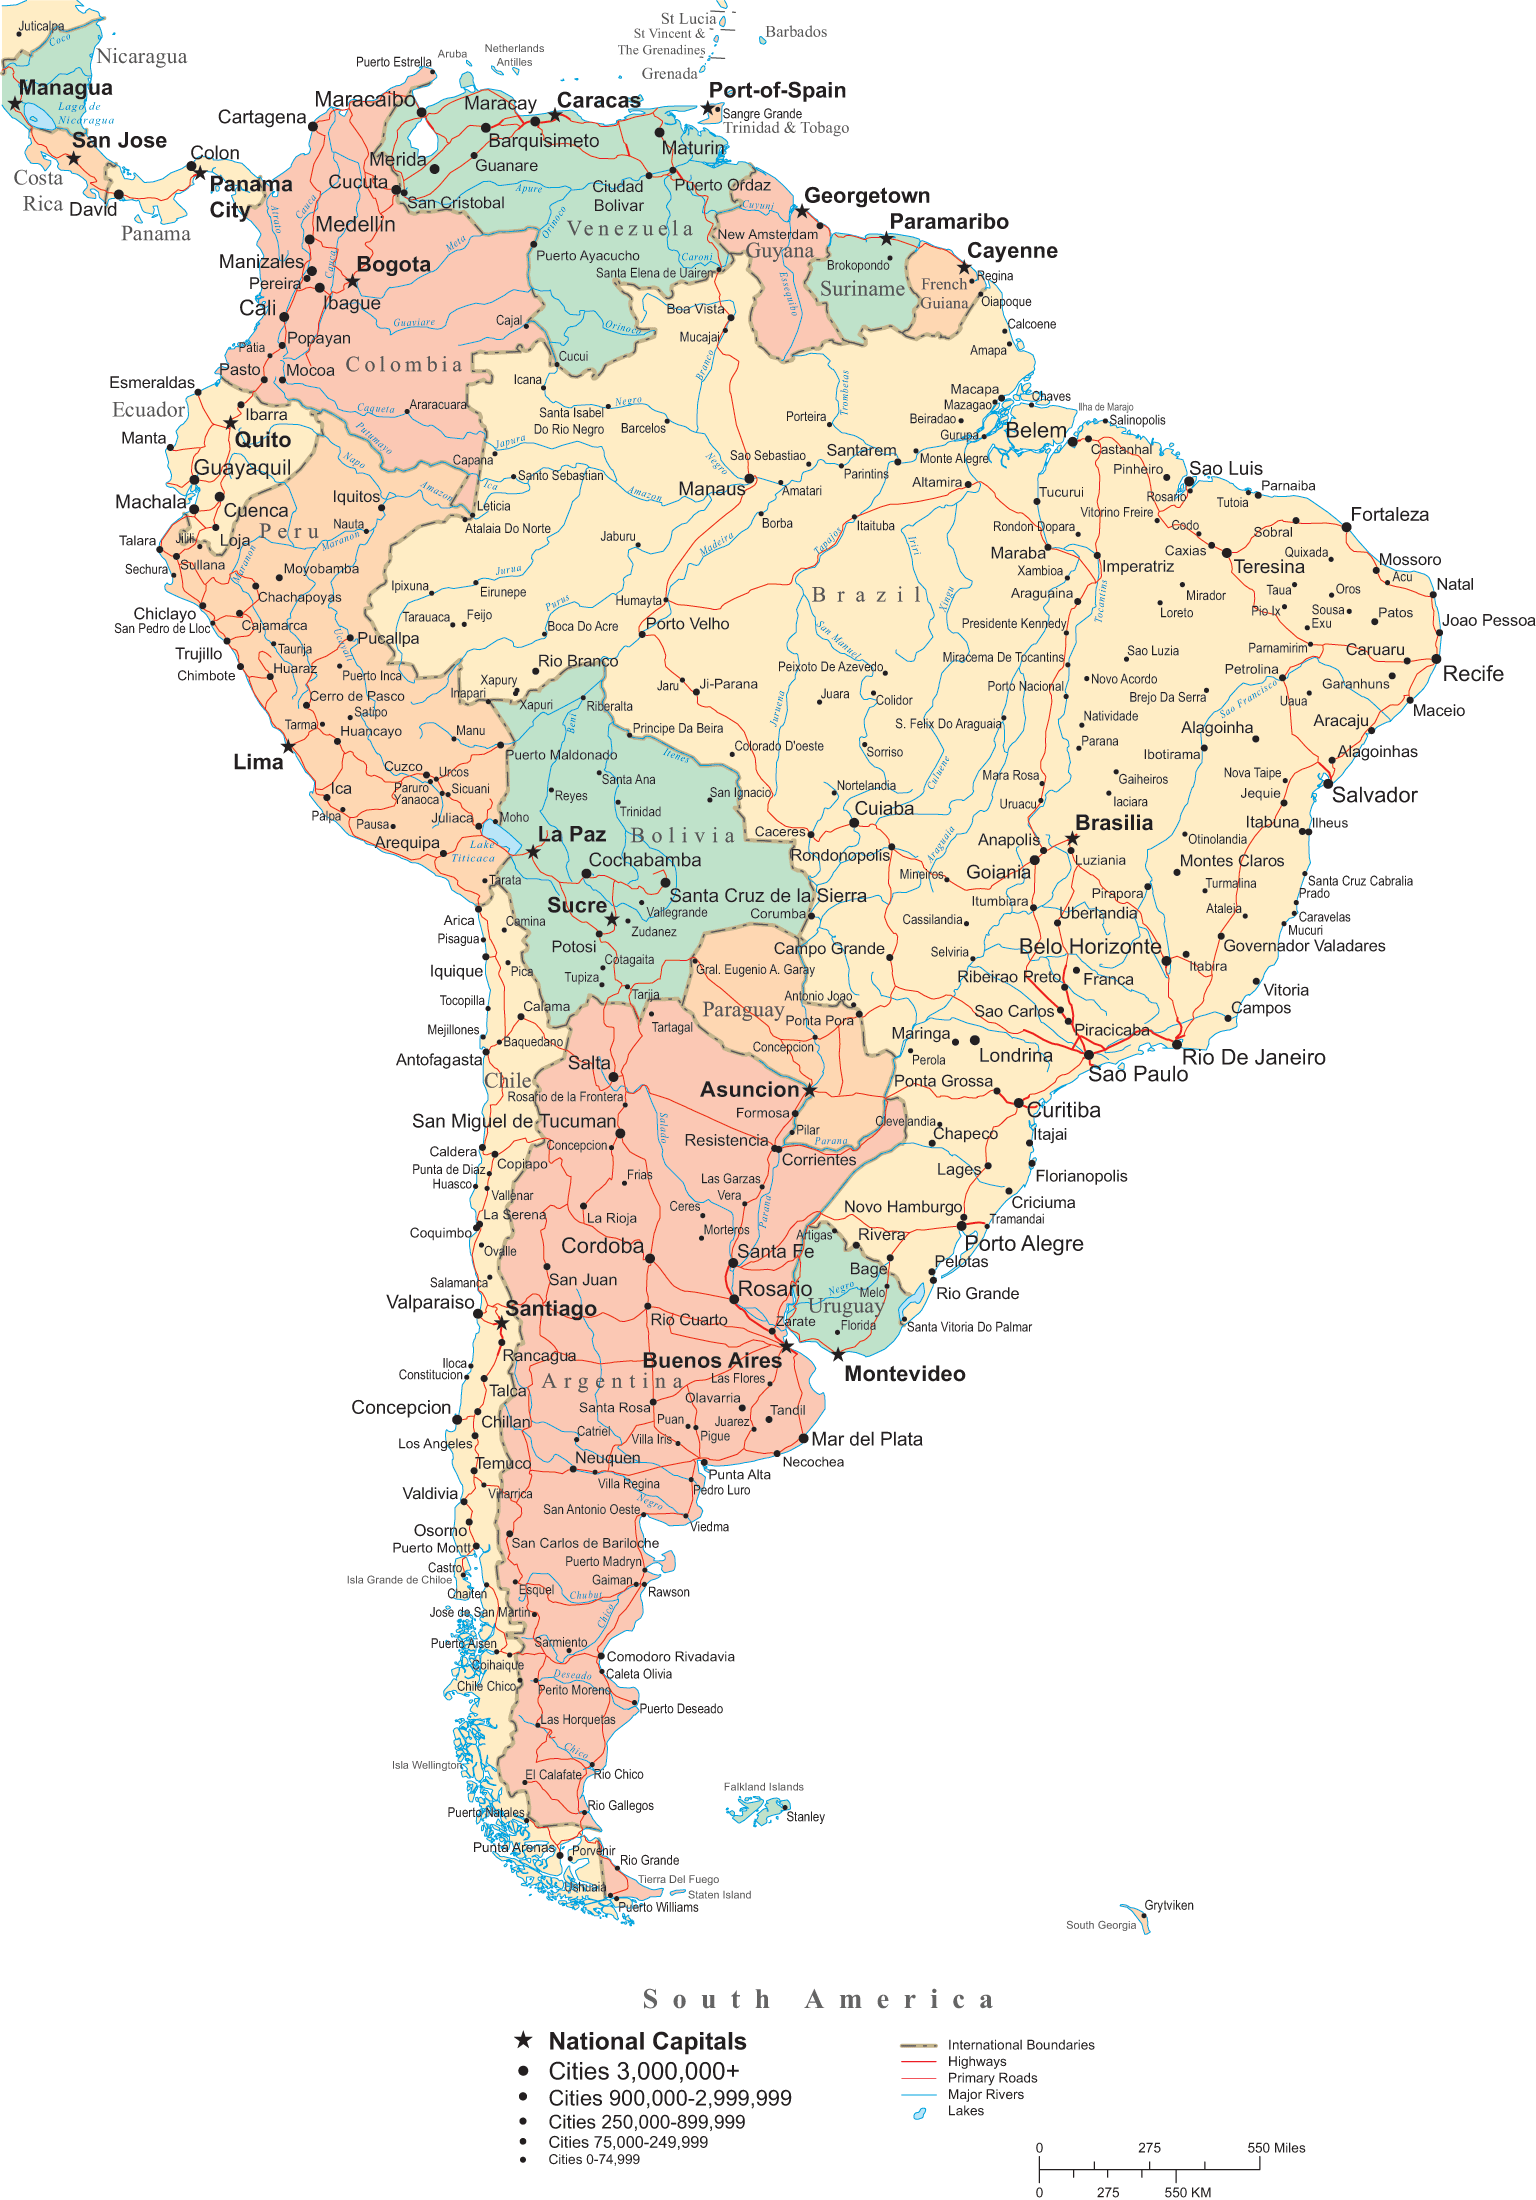 Mapa Político de América del Sur - Tamaño completo